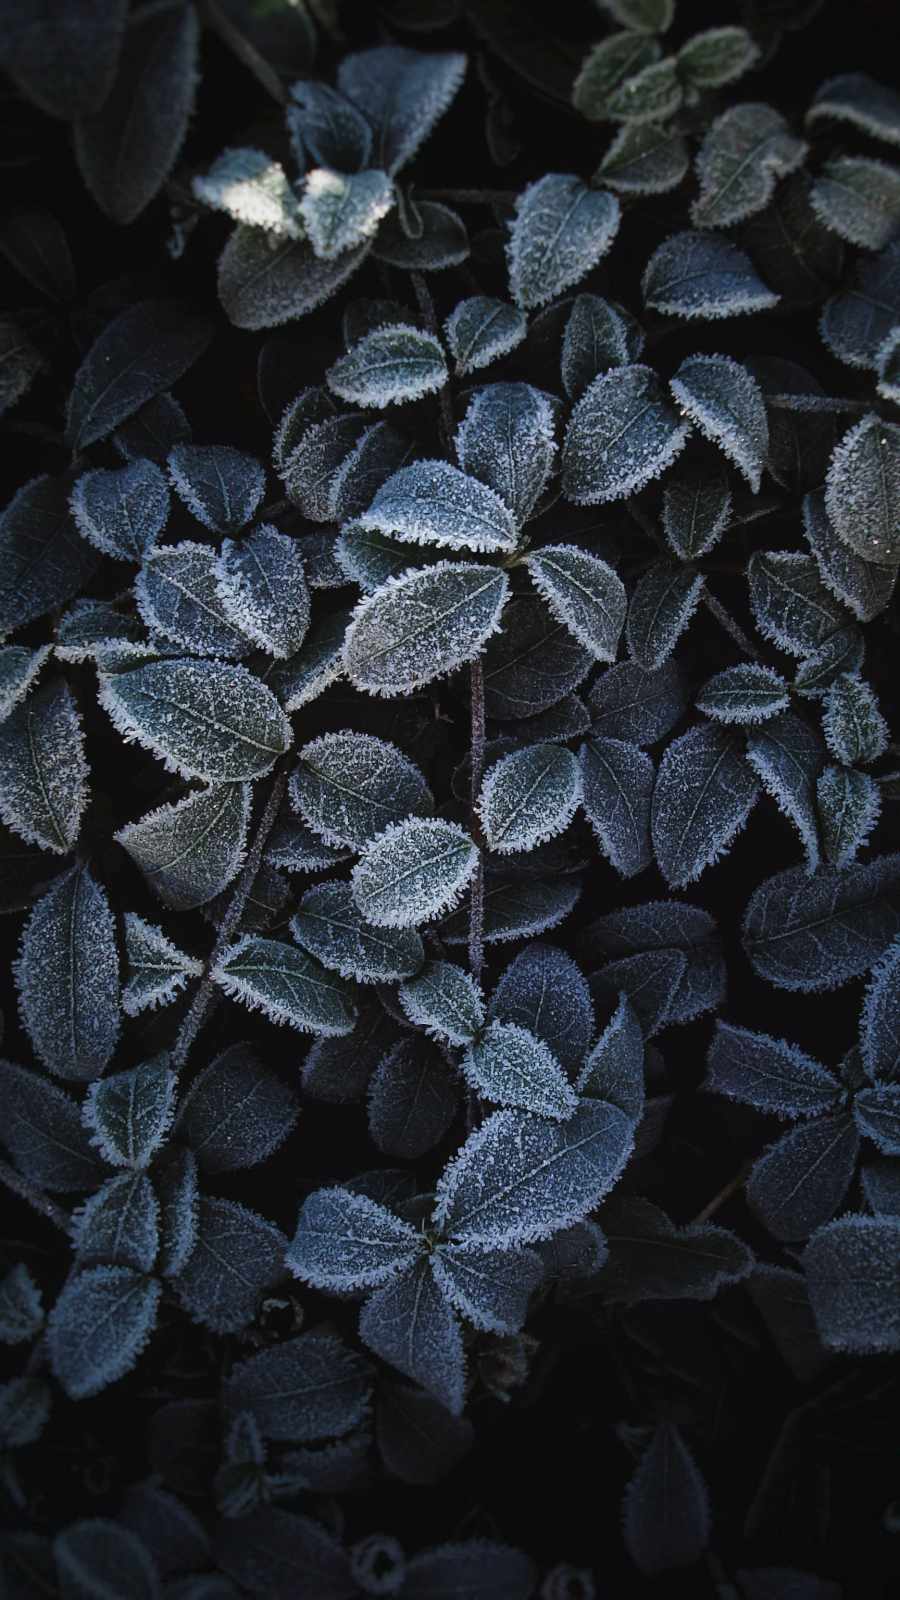 Frozen Plants IPhone Wallpaper - IPhone Wallpapers : iPhone Wallpapers